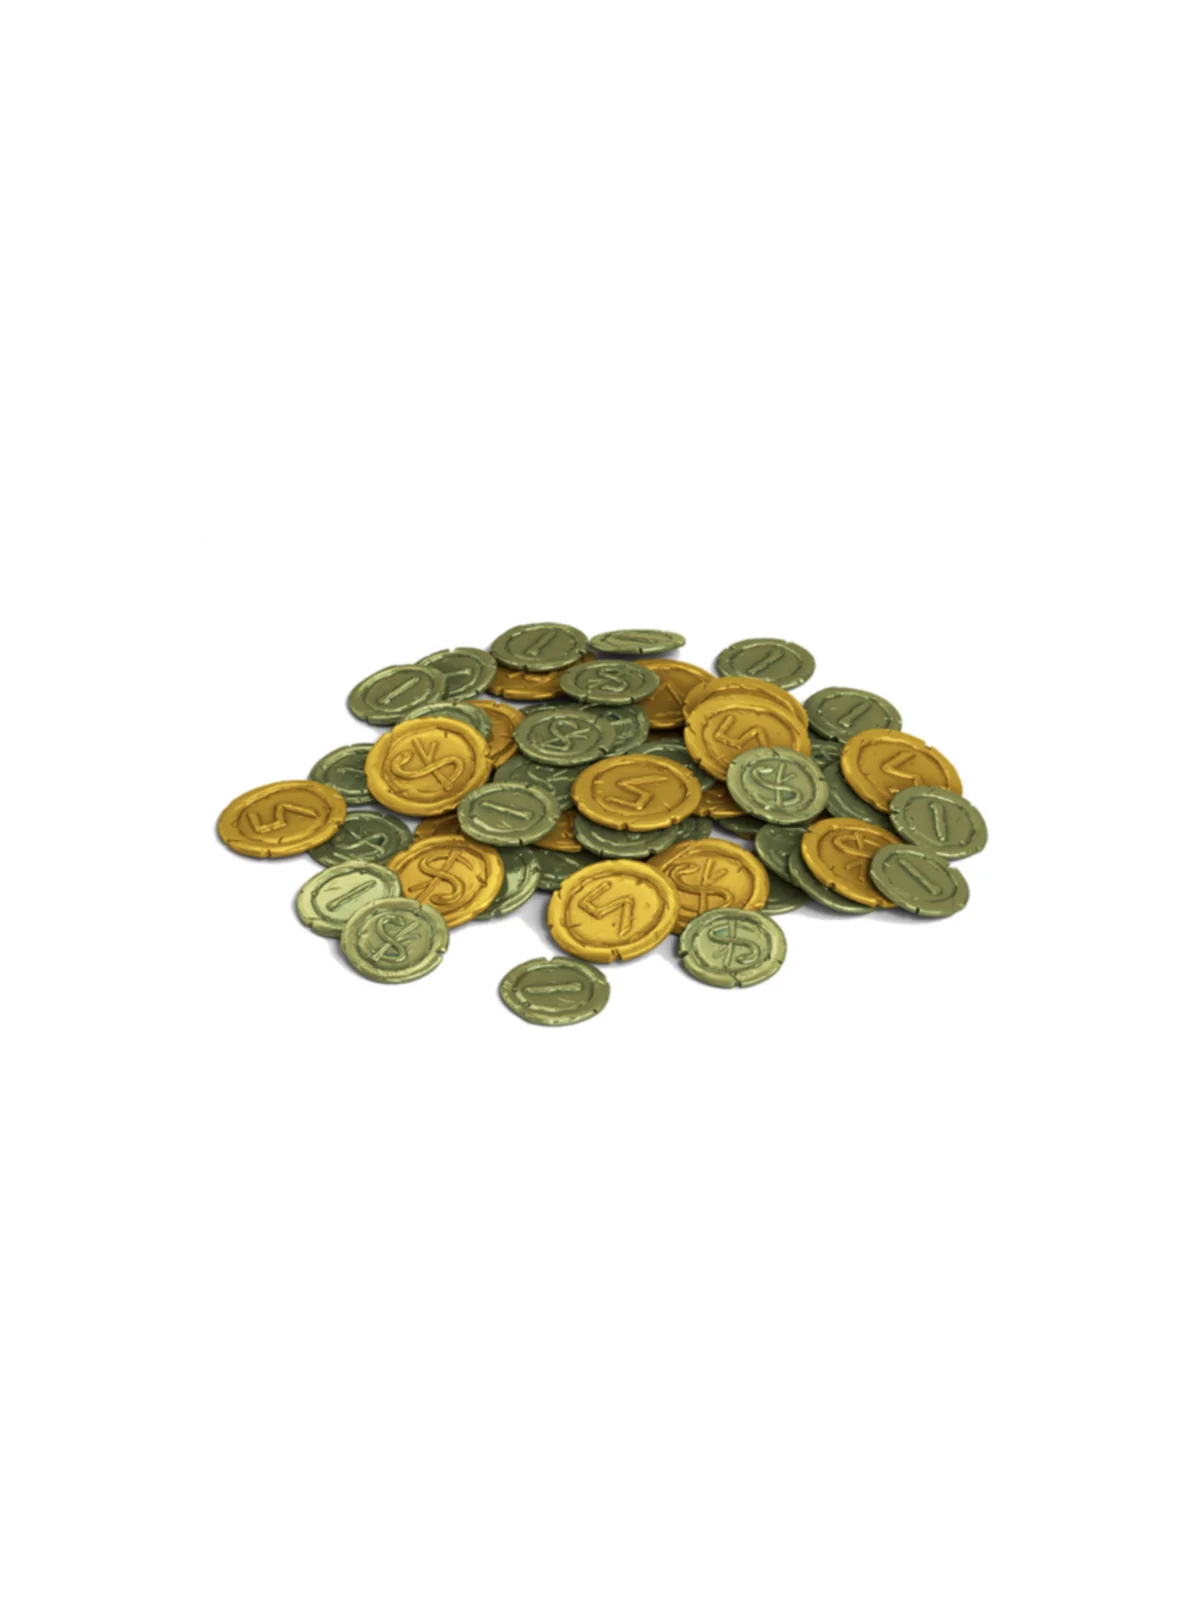 Comprar Hippocrates 60 Metal Drachma Coins barato al mejor precio 28,4